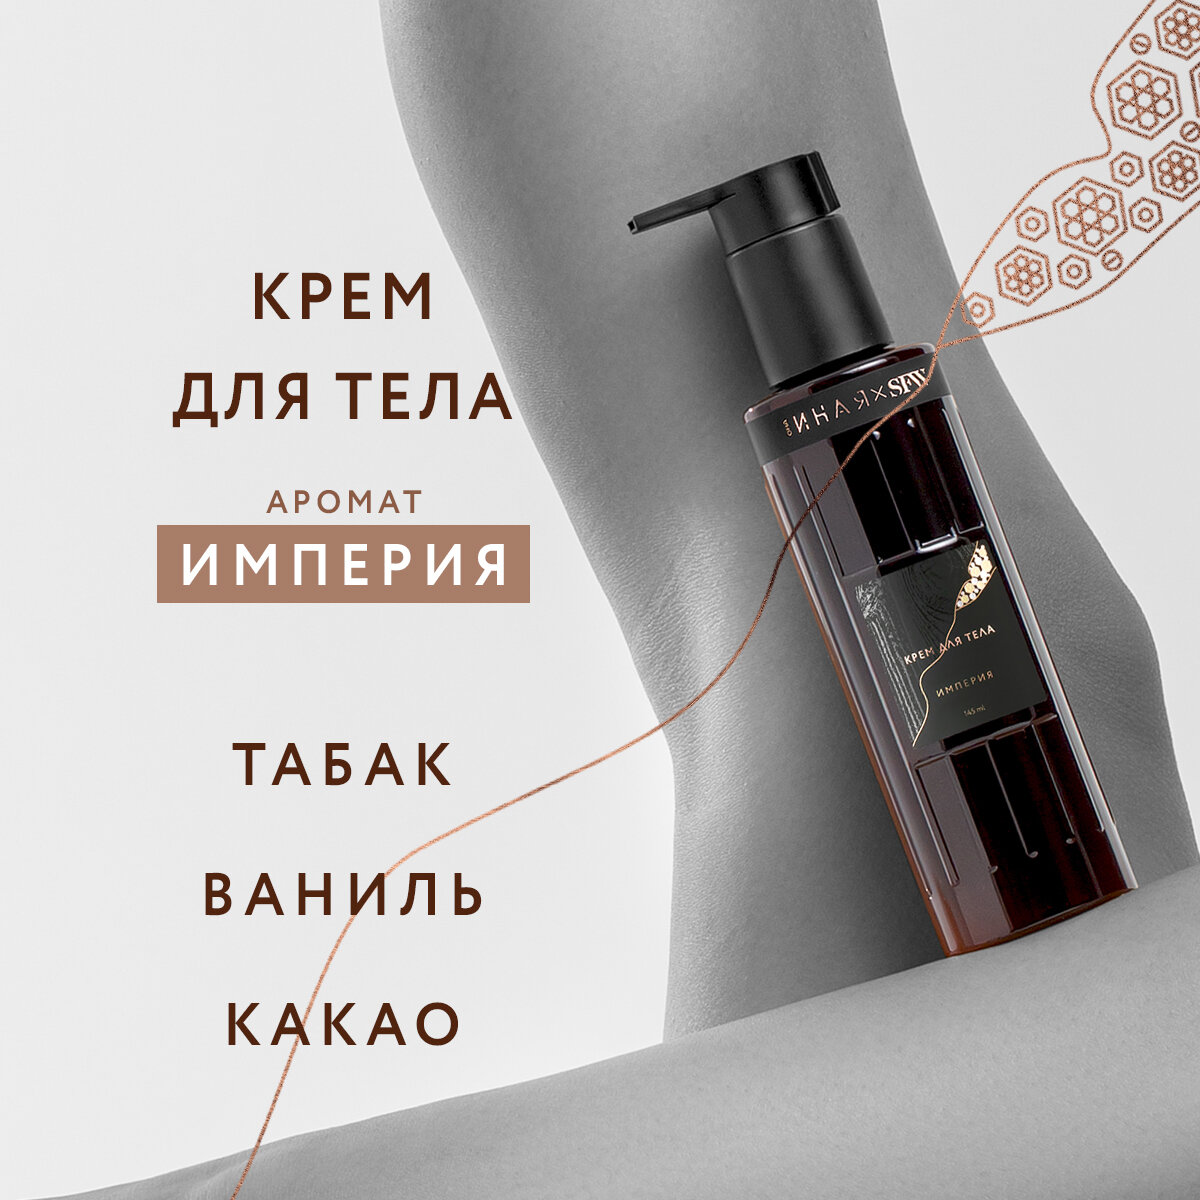 Крем для тела с ароматом Империя Она Иная & Sochi Fashion Week 145мл /парфюмированный , протеин шелка, гиалуроновая кислота, церамиды